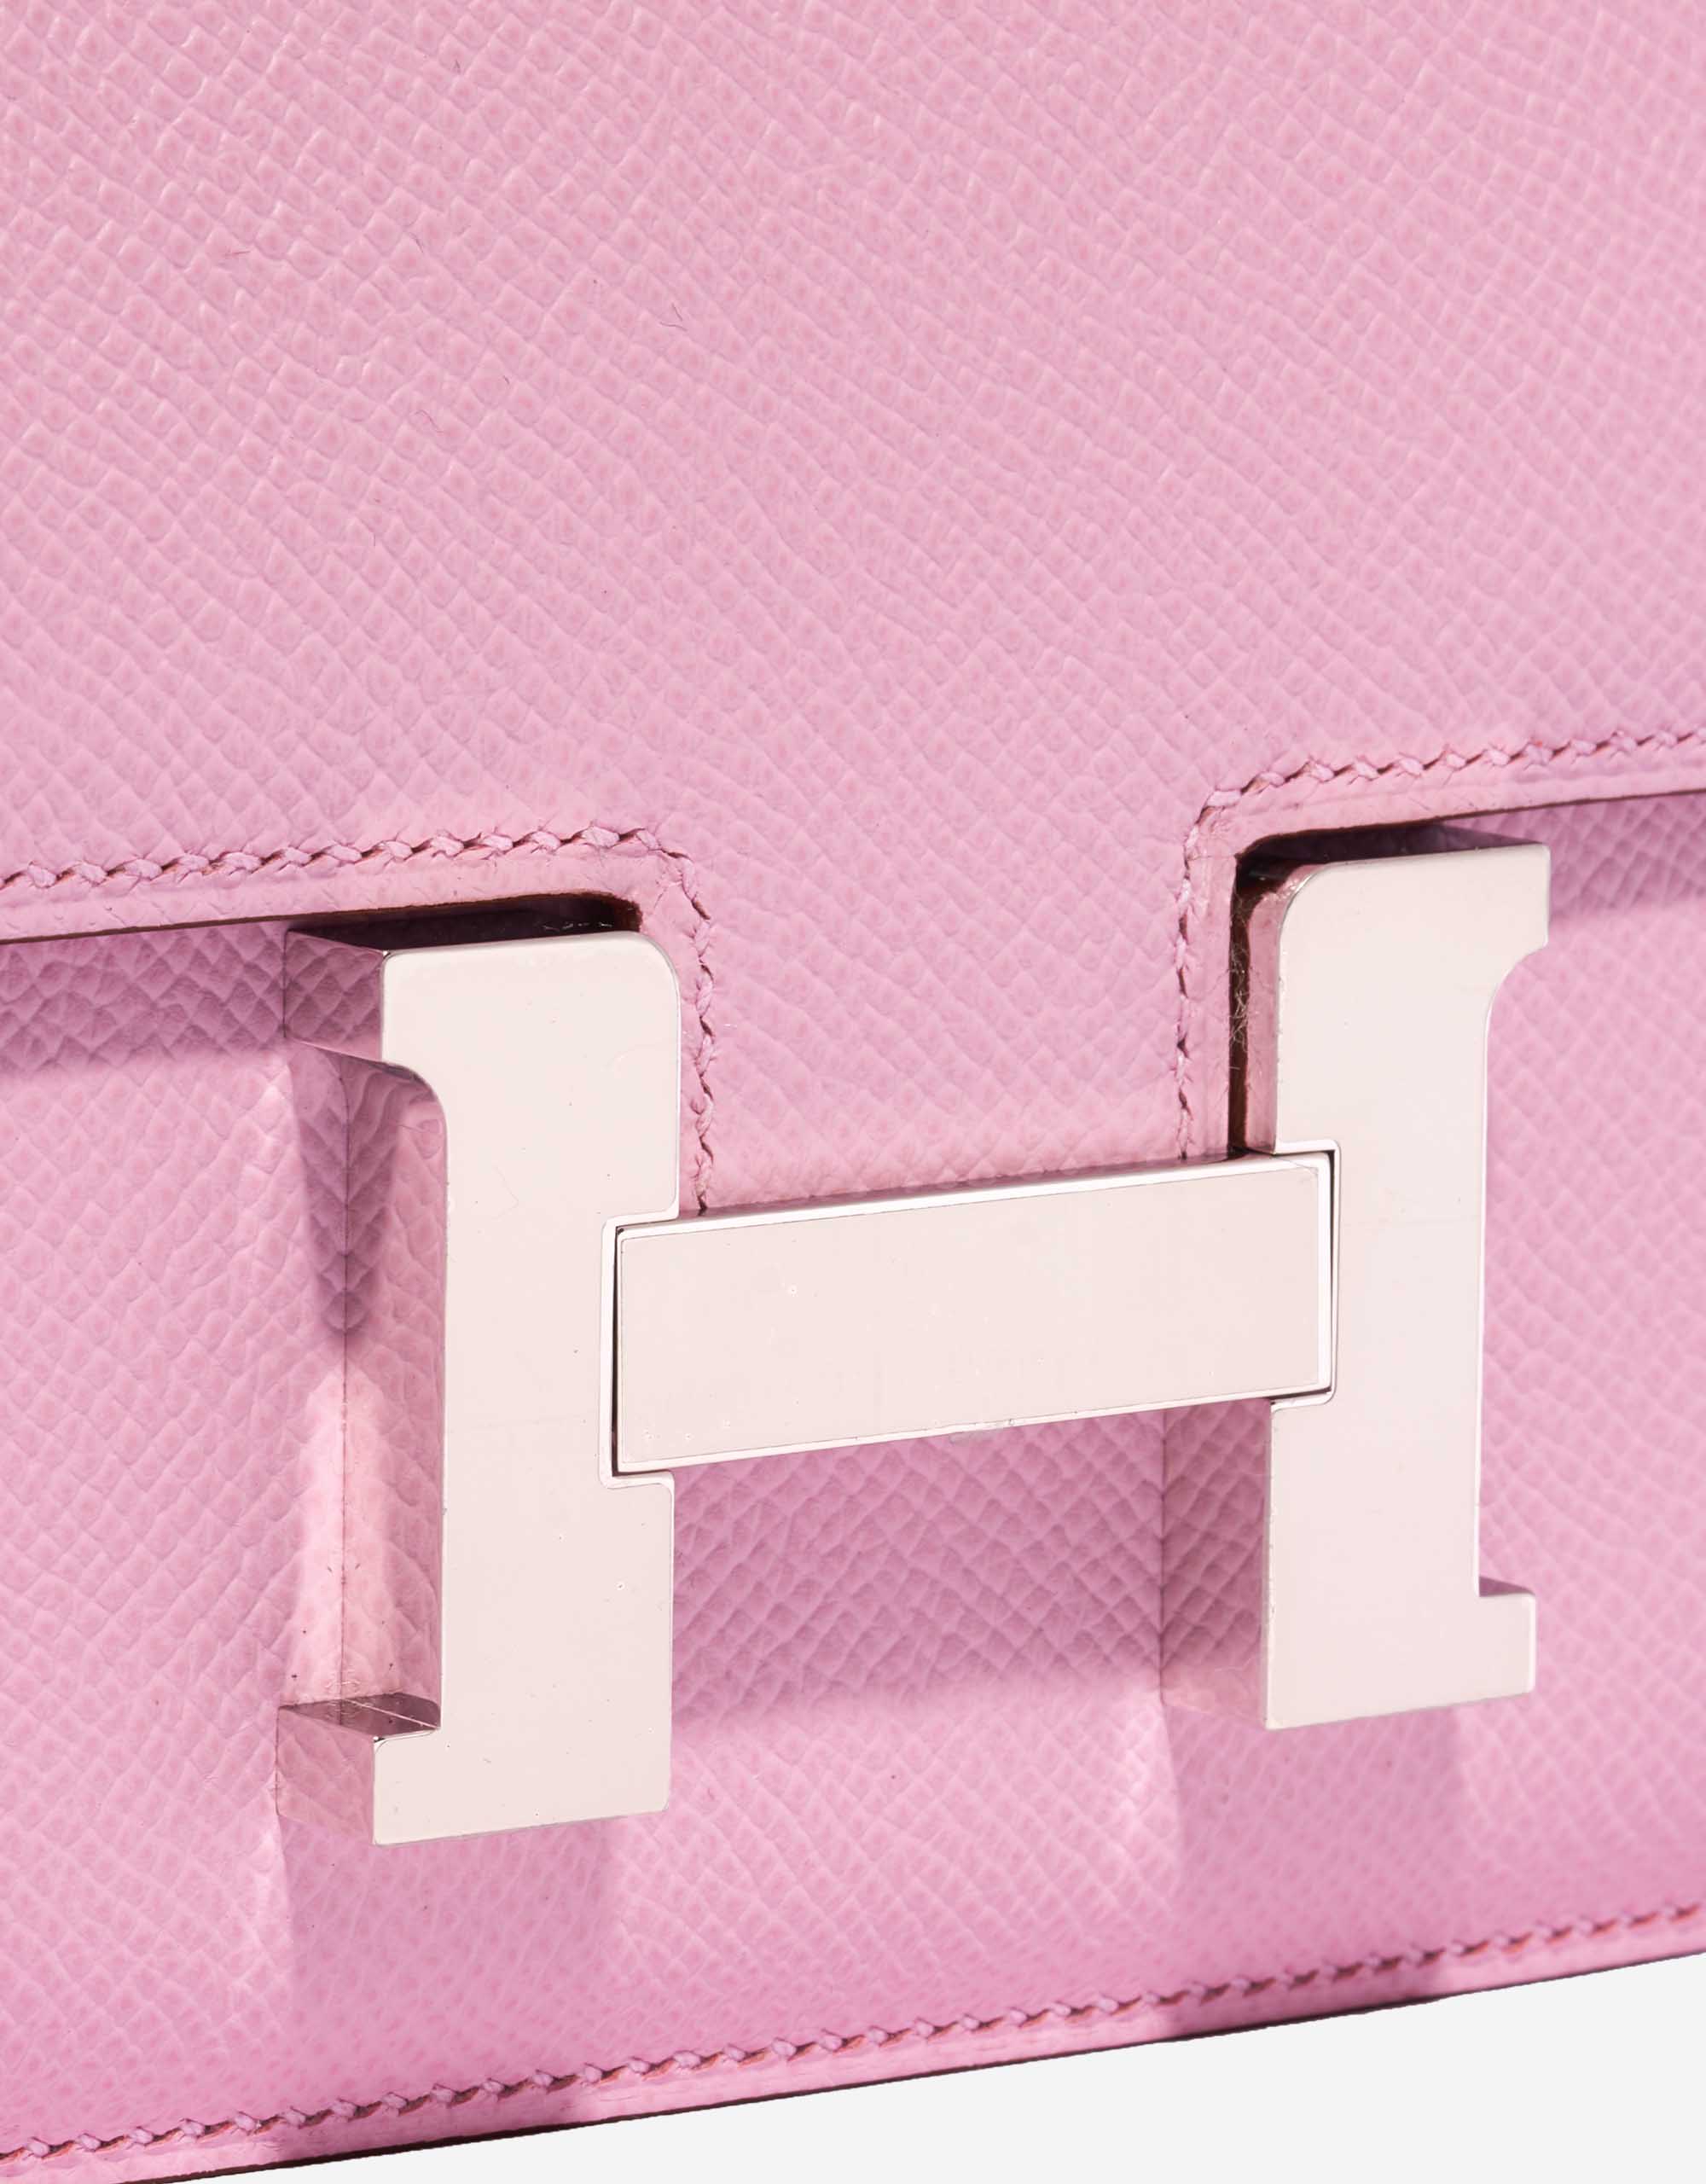 Sac Hermès d'occasion Constance 18 Epsom Mauve Sylvestre Pink Closing System | Vendez votre sac de créateur sur Saclab.com